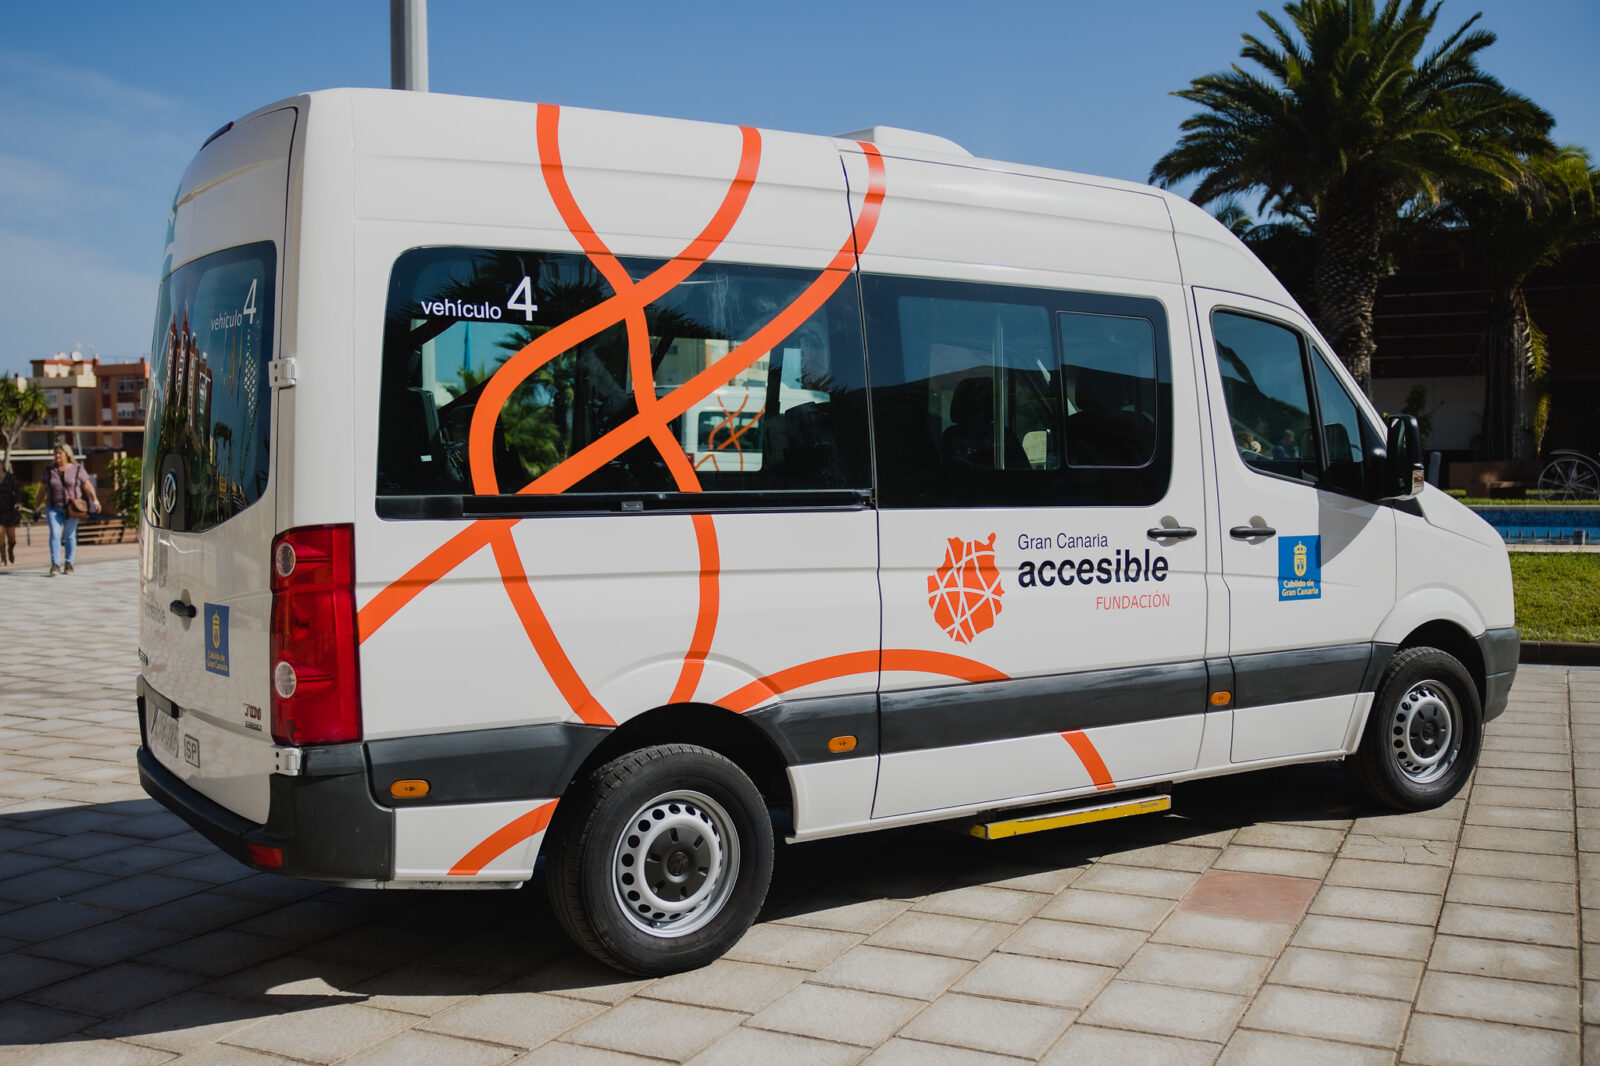 Servicio de transporte accesible en Gran Canaria